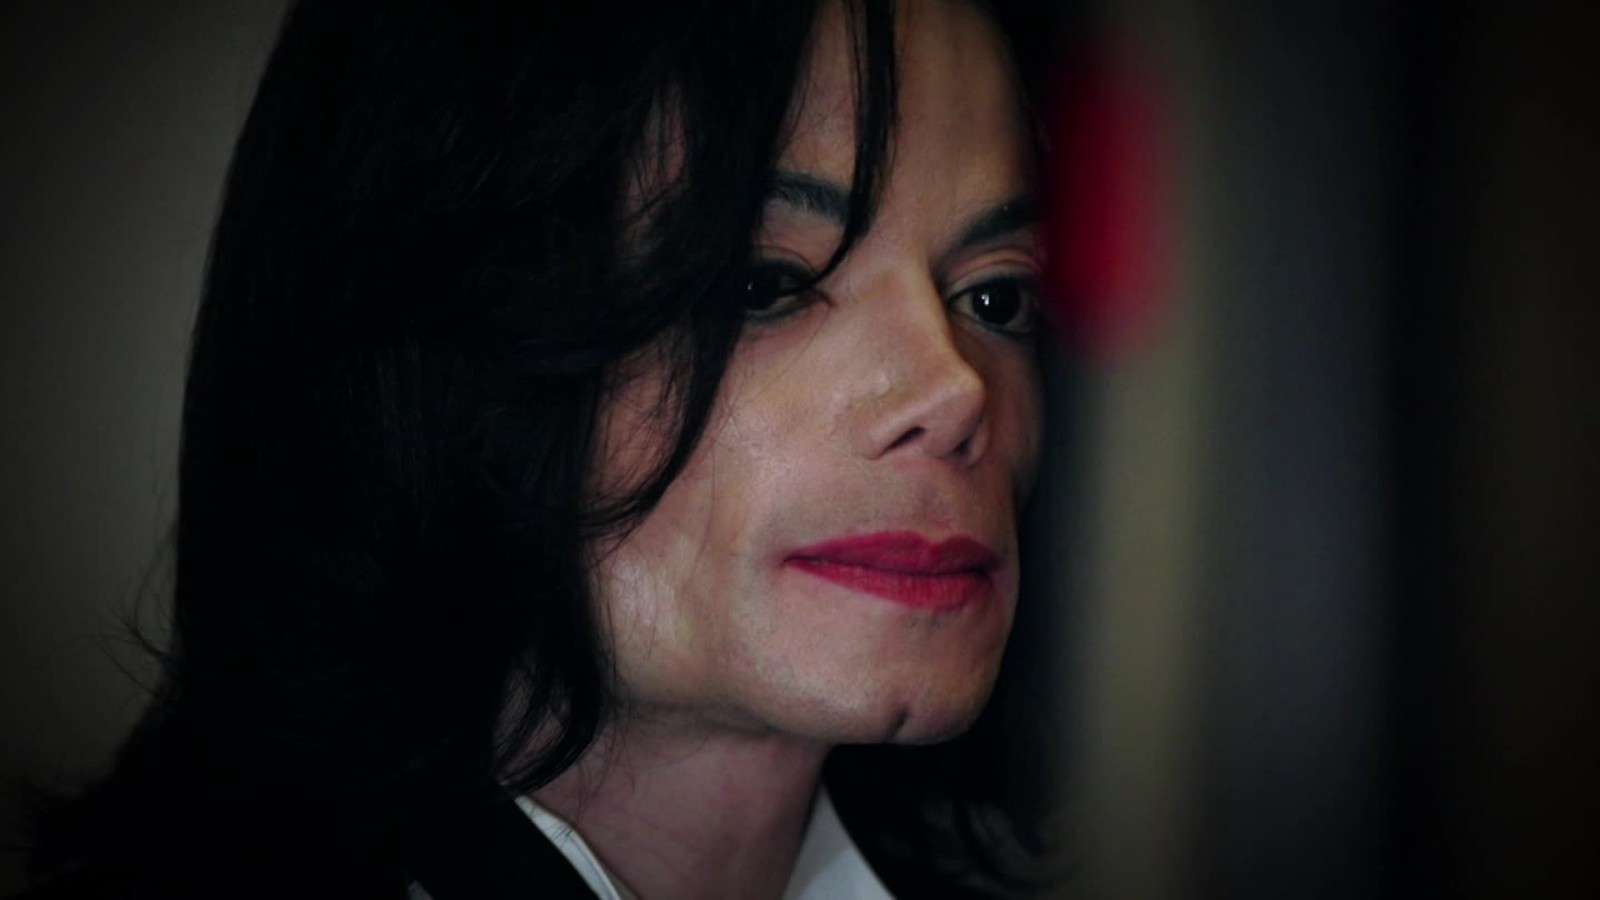 Σοκάρει η μαρτυρία της καθαρίστριας του Μάικλ Τζάκσον – “Ναι, ήταν παιδόφιλος” (video)